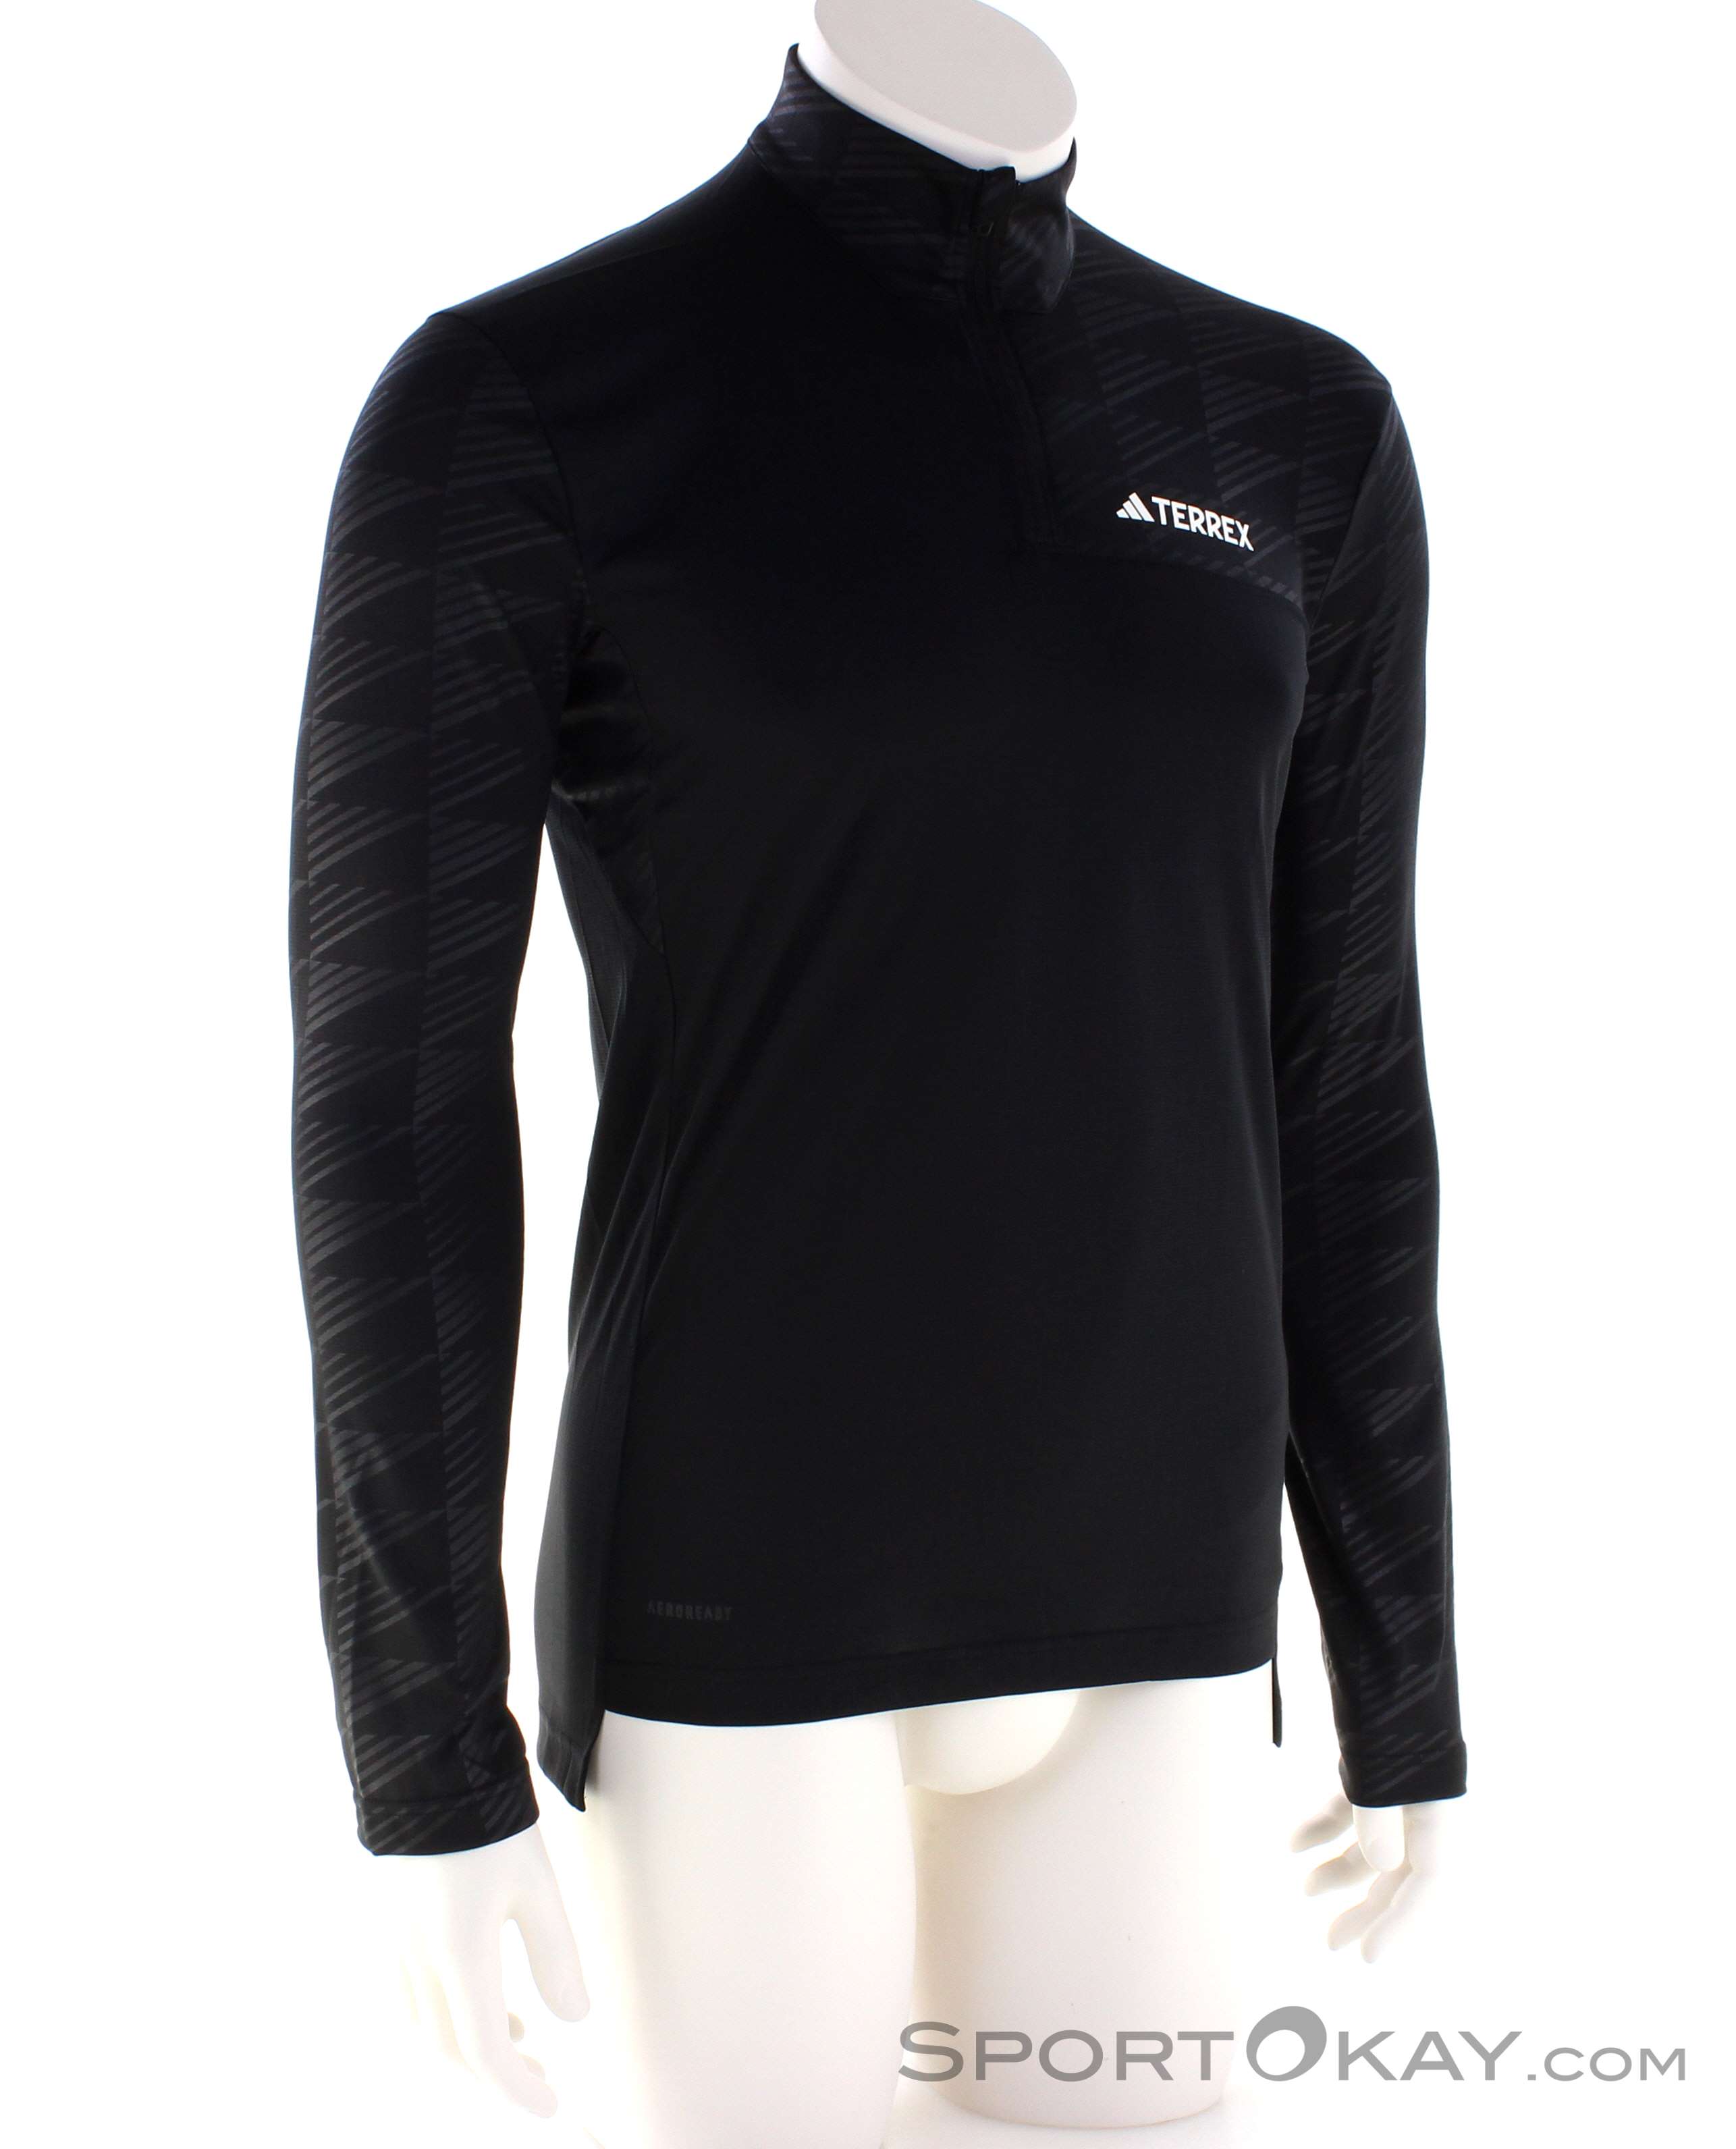 LS - Terrex - & adidas Outdoorbekleidung Multi Shirt Shirts Outdoor Hemden - Herren - Half-Zip Alle